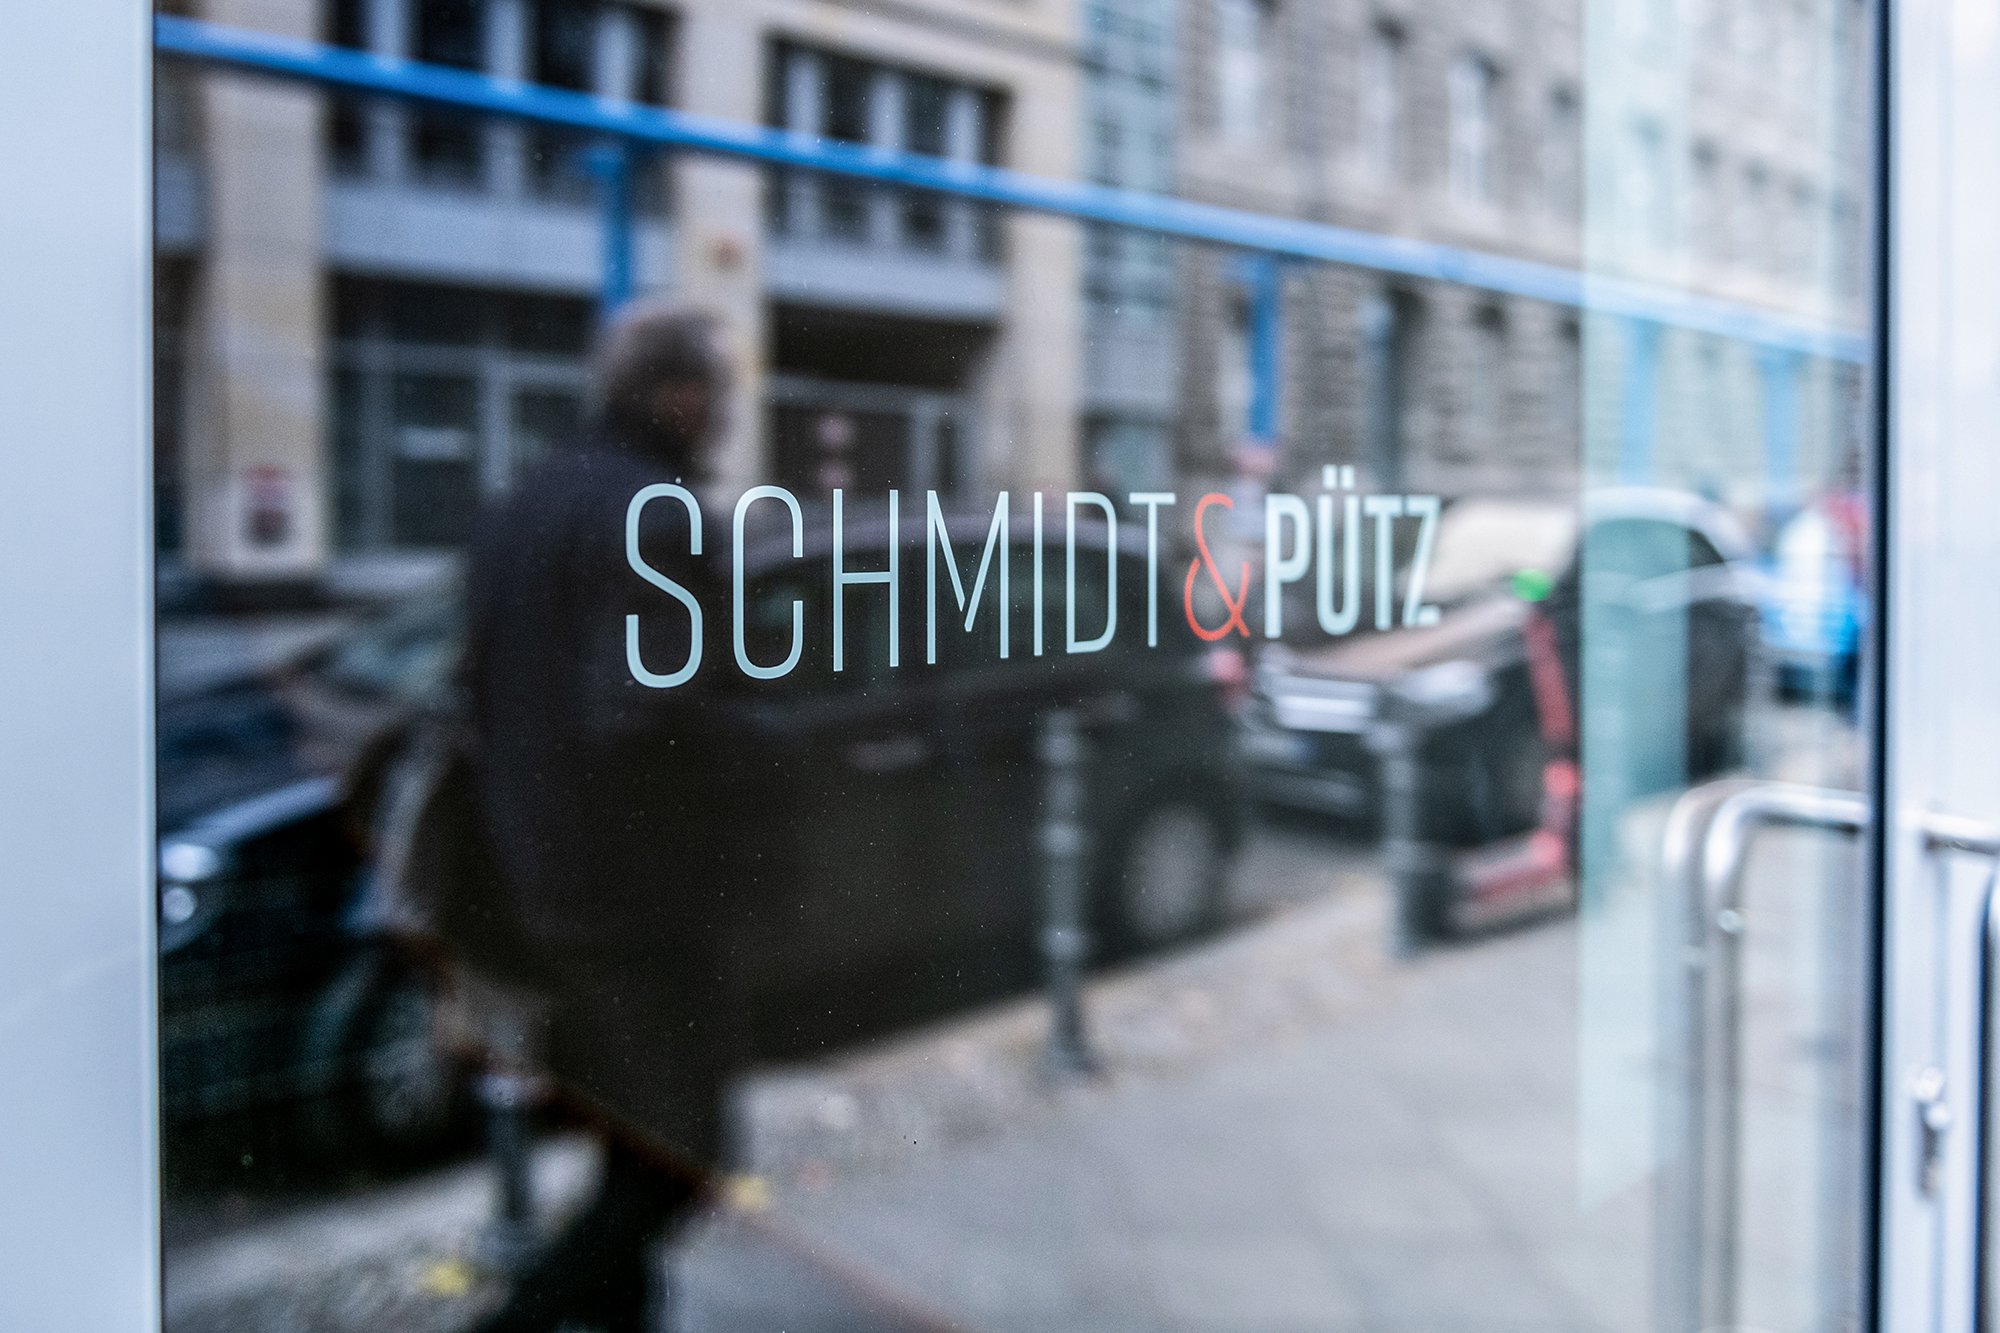 Schmidt & Pütz